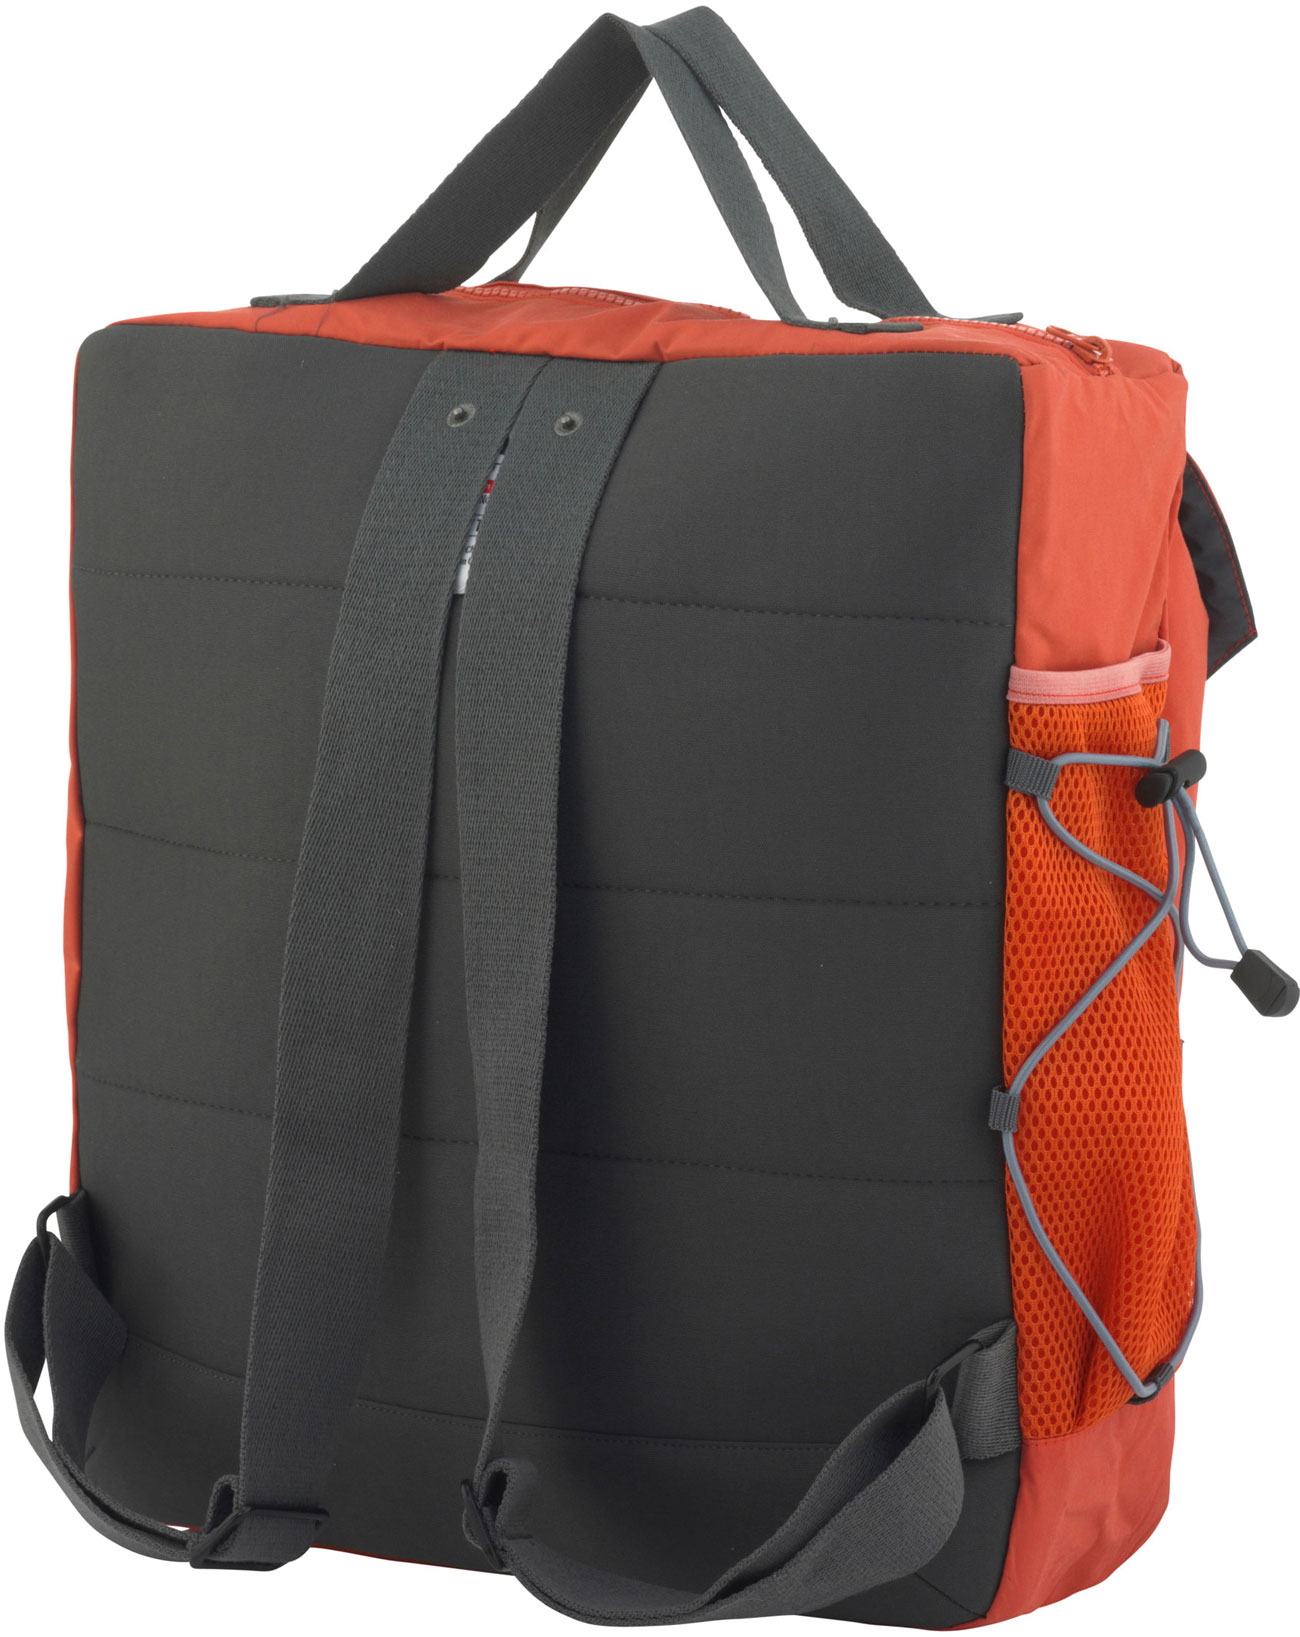 City backpack/bag